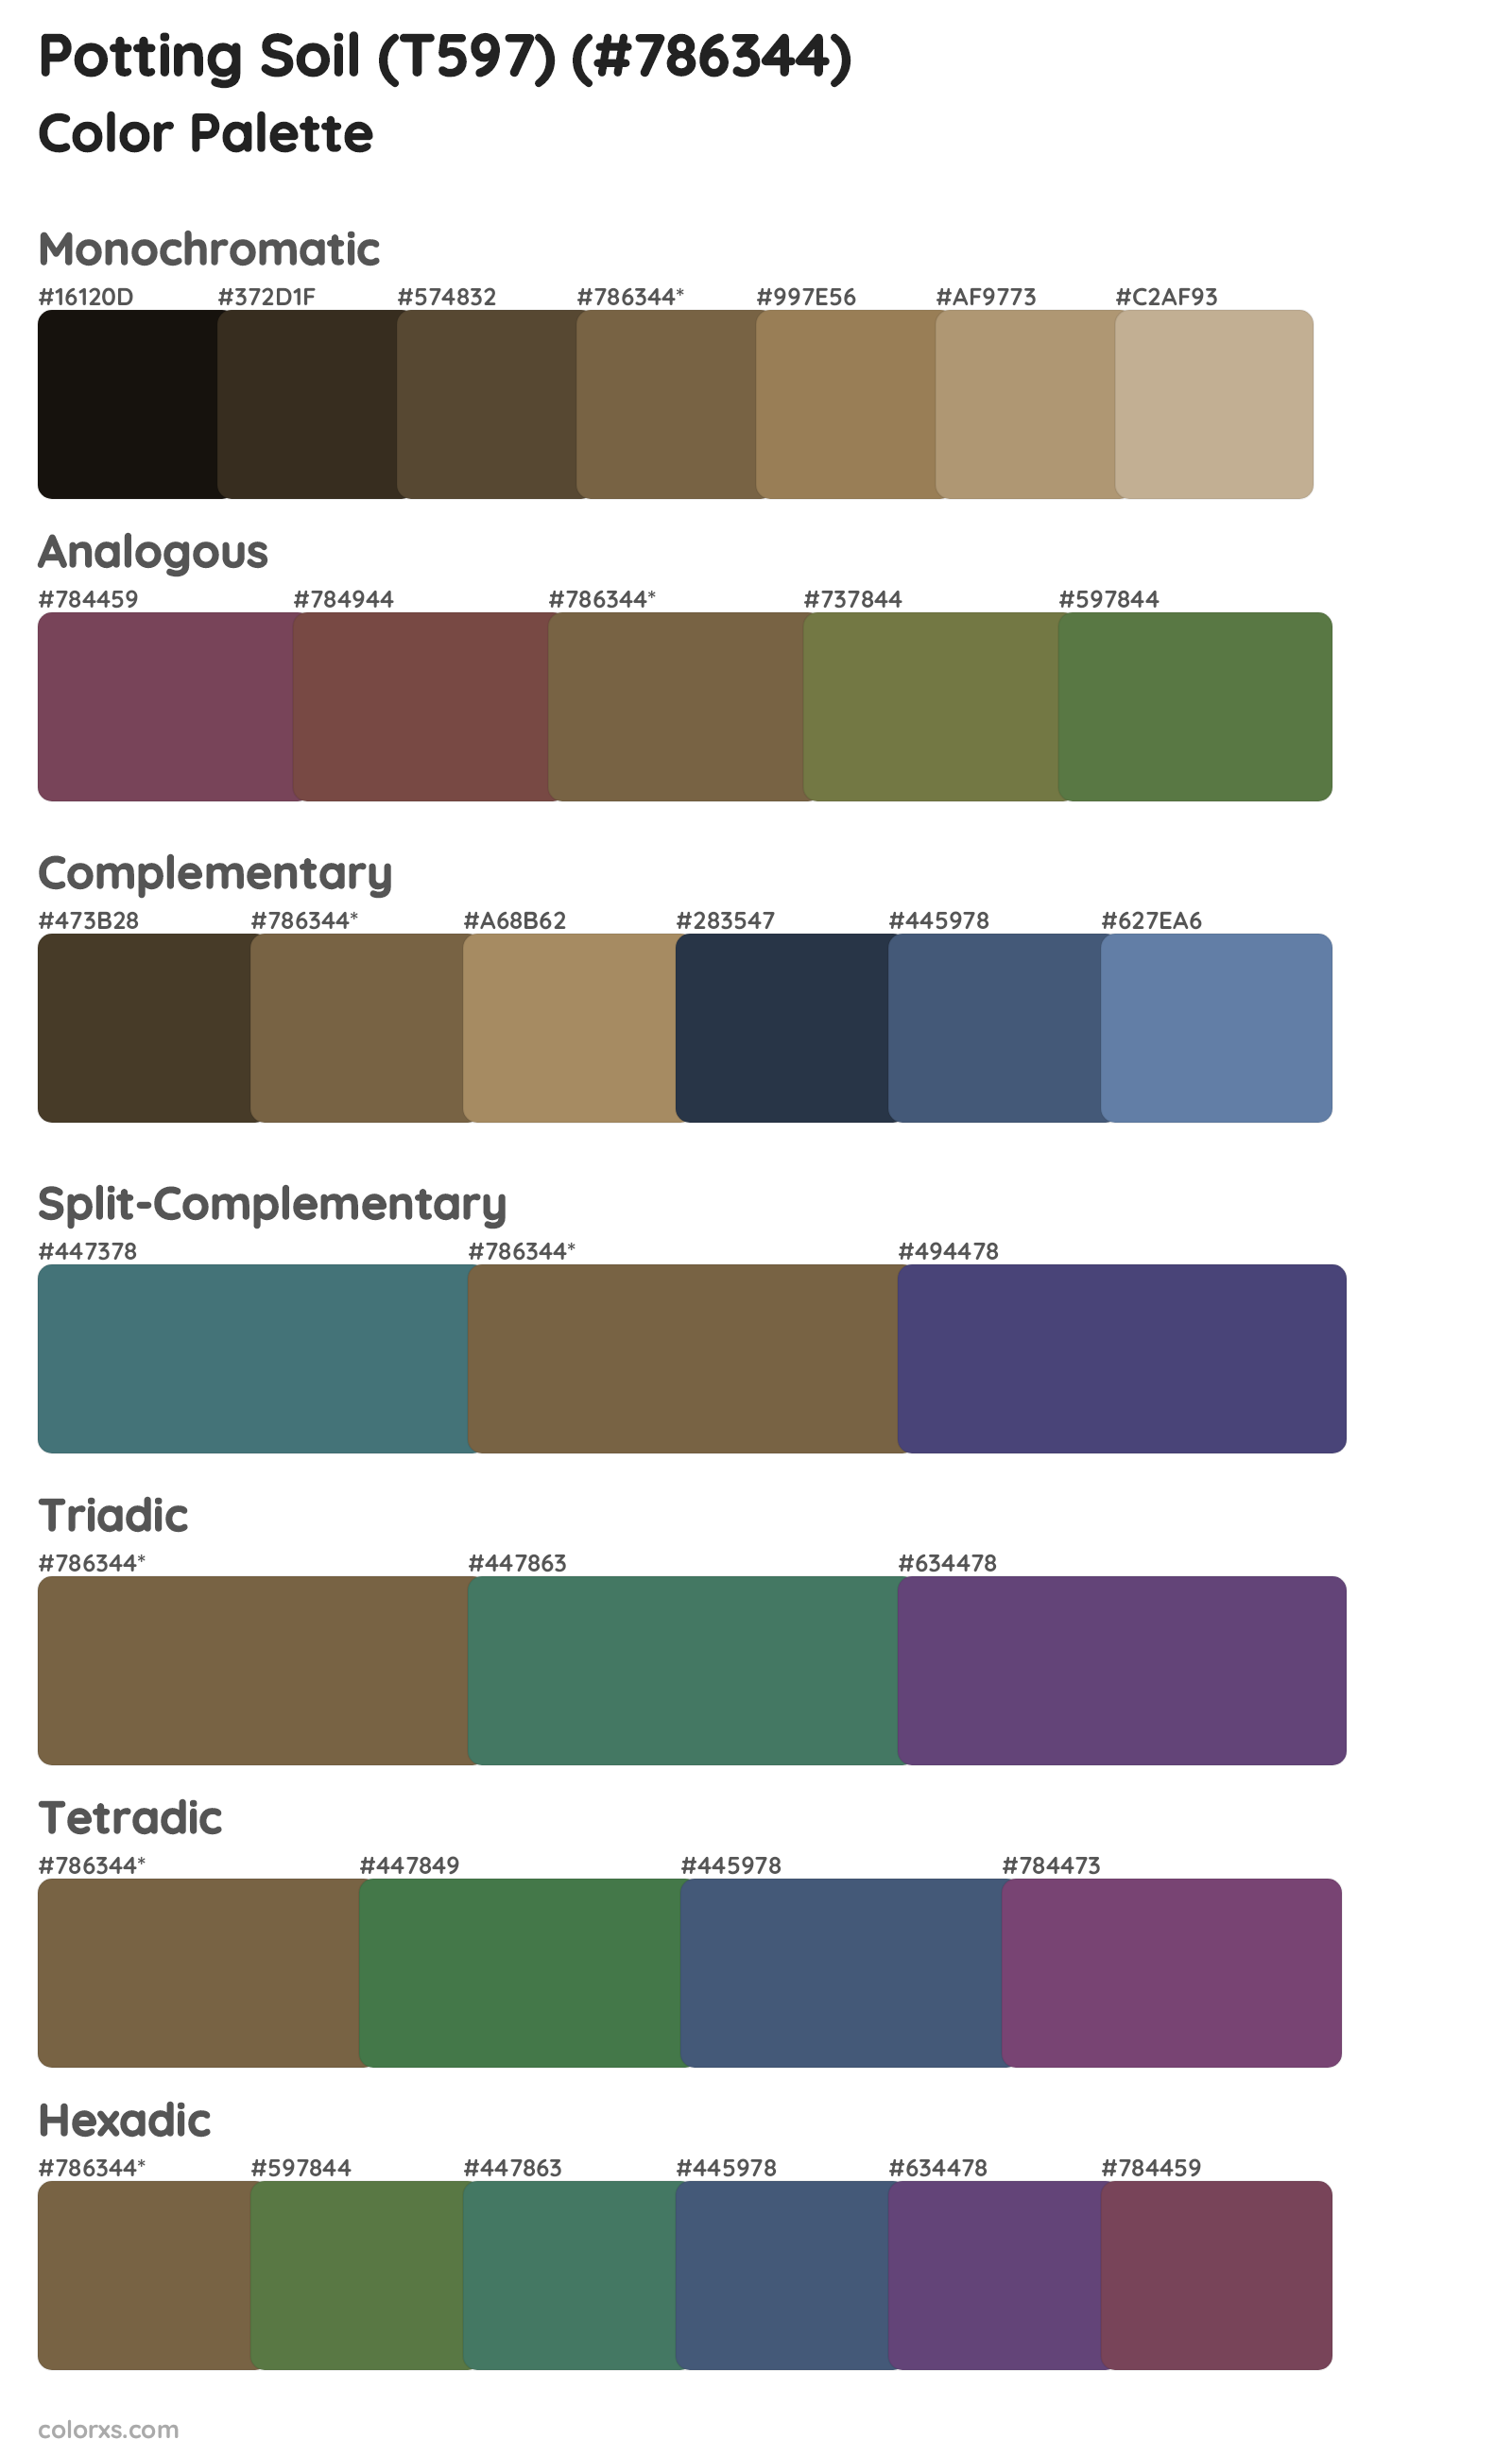 Potting Soil (T597) Color Scheme Palettes